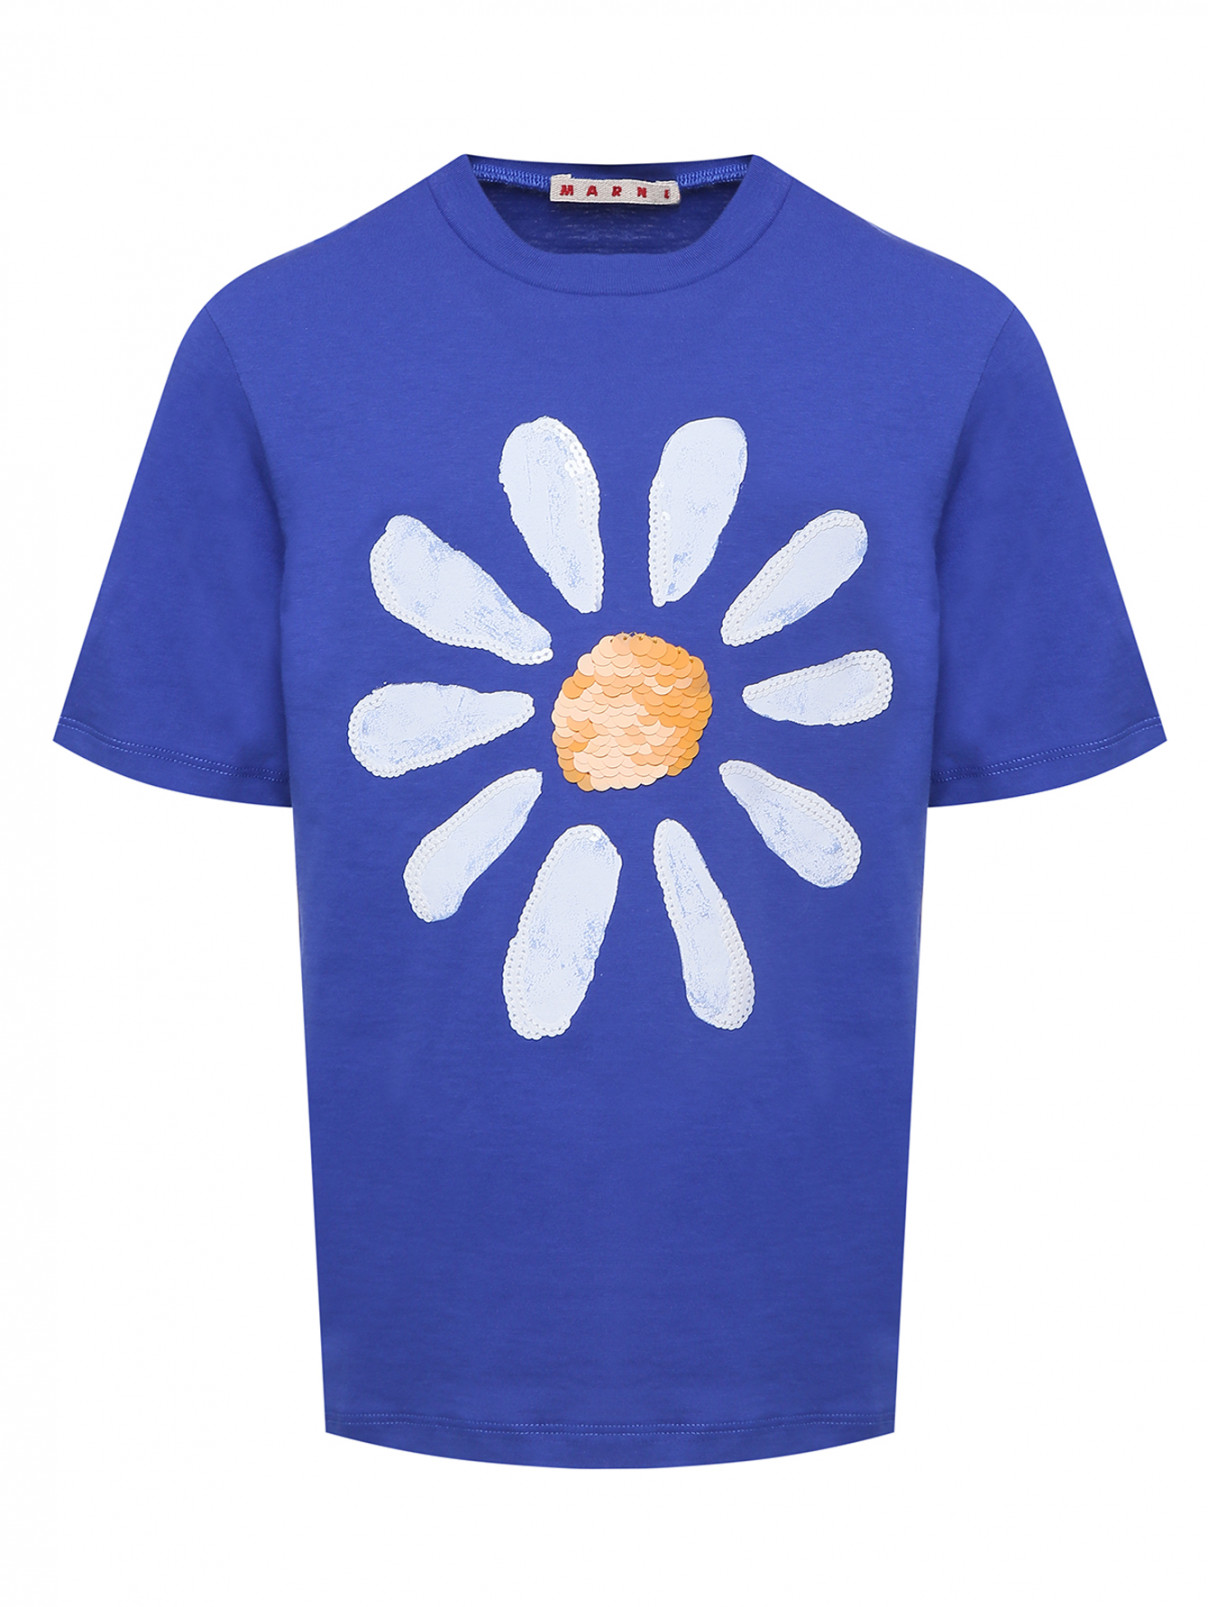 Хлопковая футболка с пайетками Marni  –  Общий вид  – Цвет:  Синий